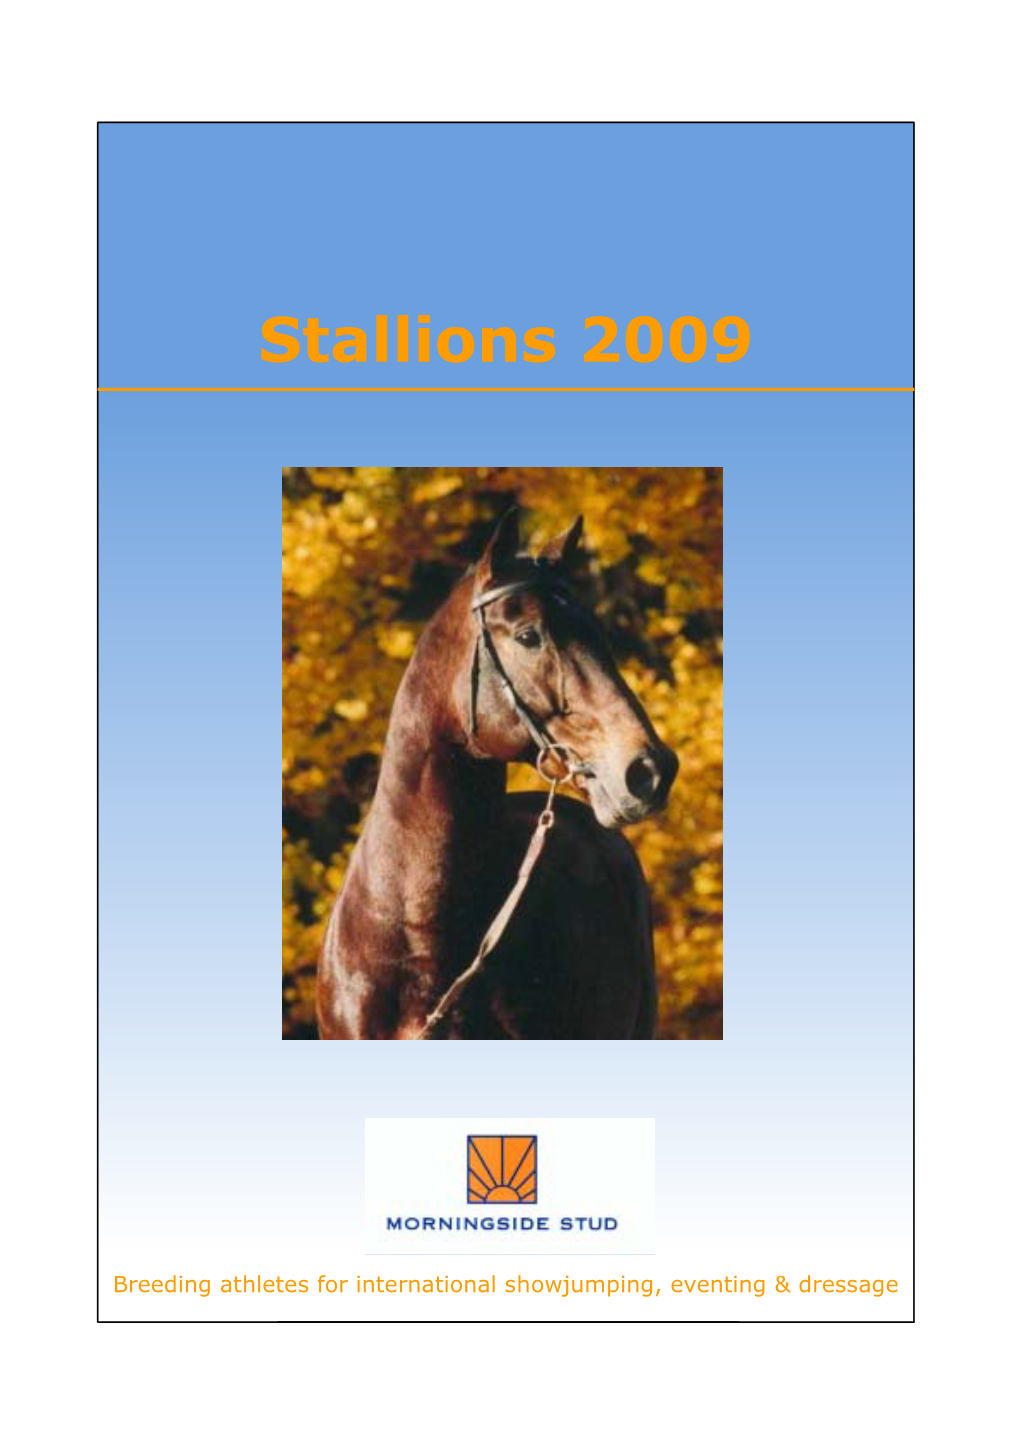 2009 Stallion Catalogue